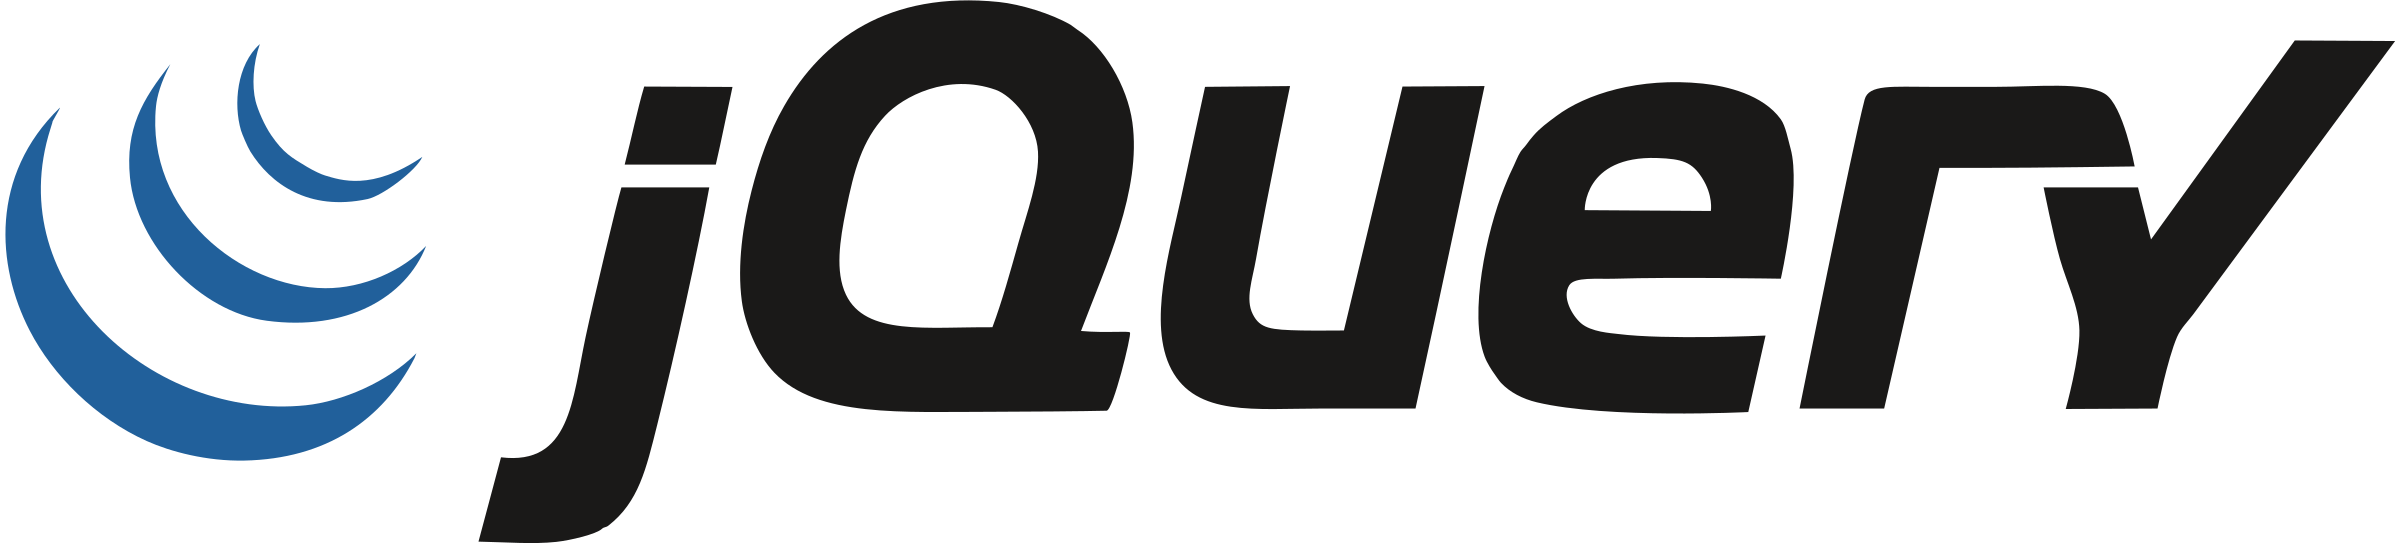 Logo Jquery Responsive Web De